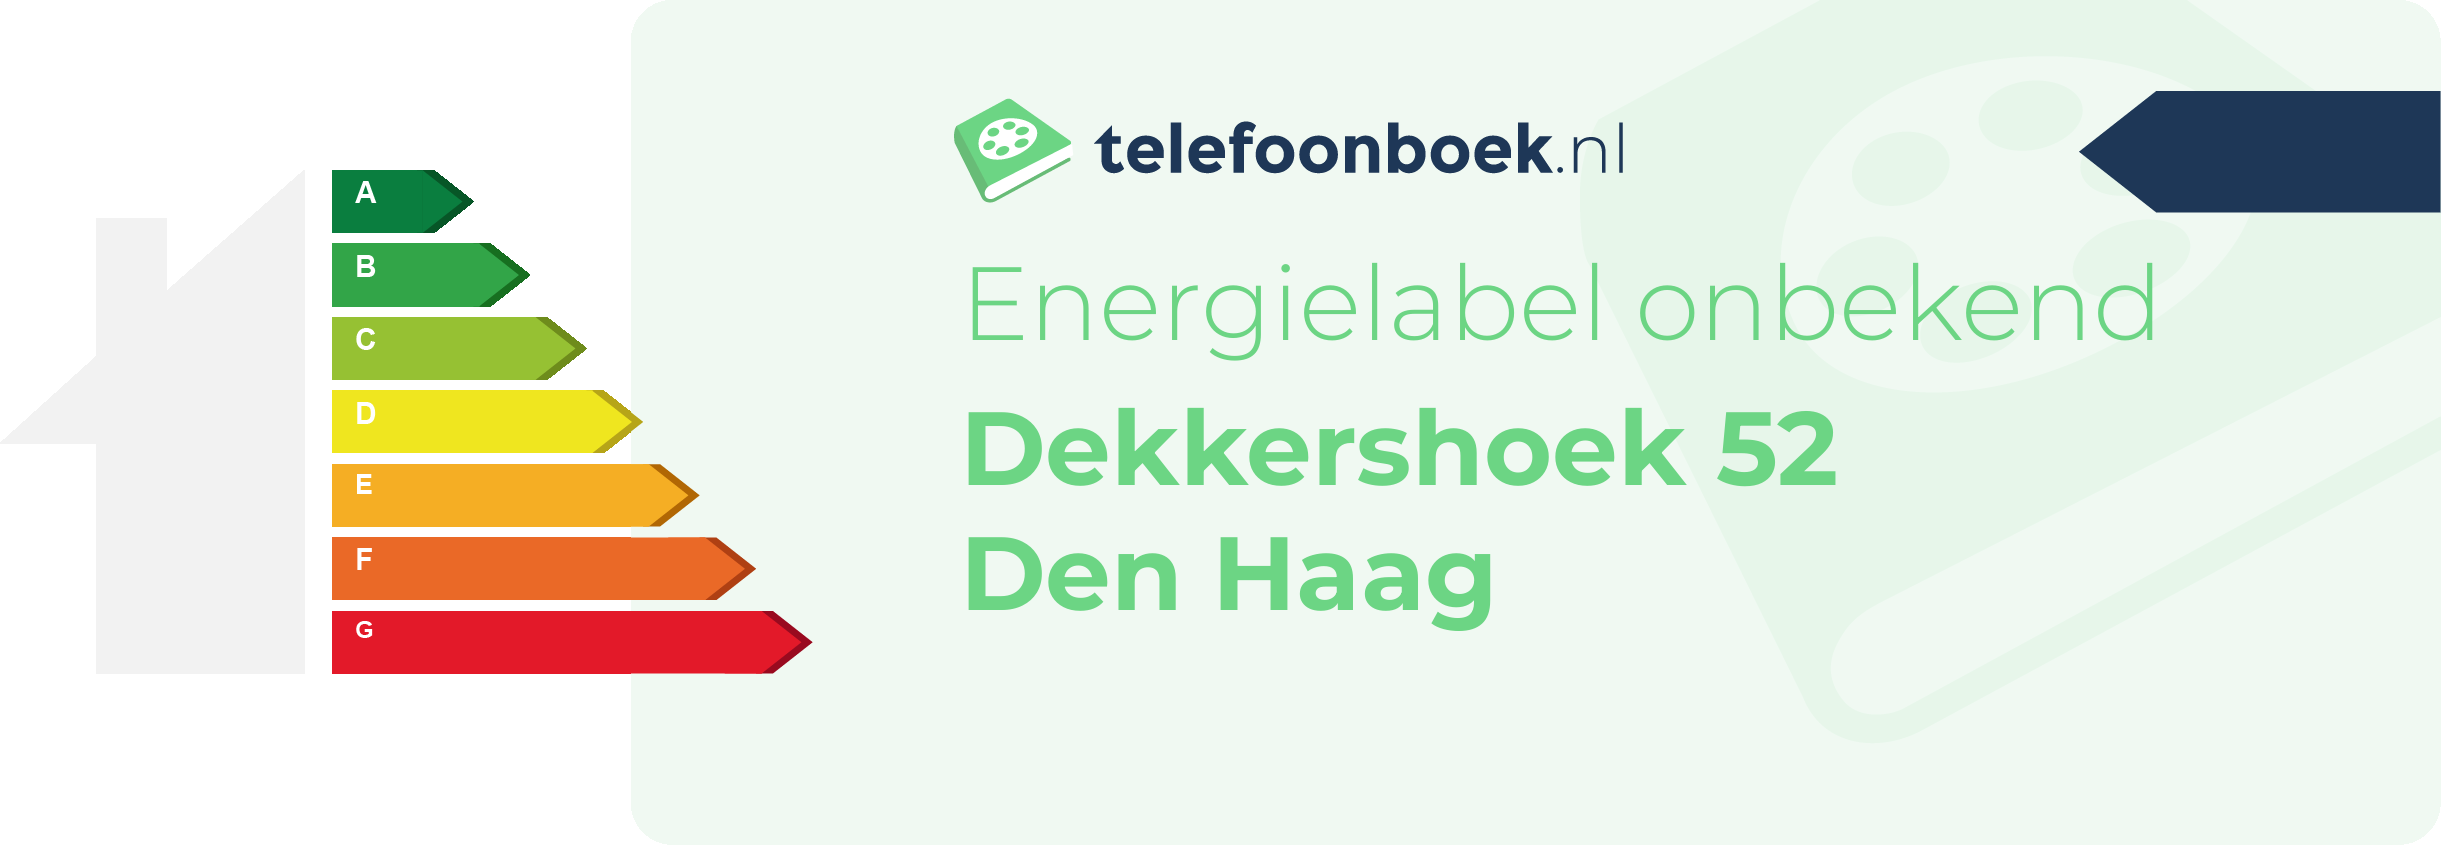 Energielabel Dekkershoek 52 Den Haag